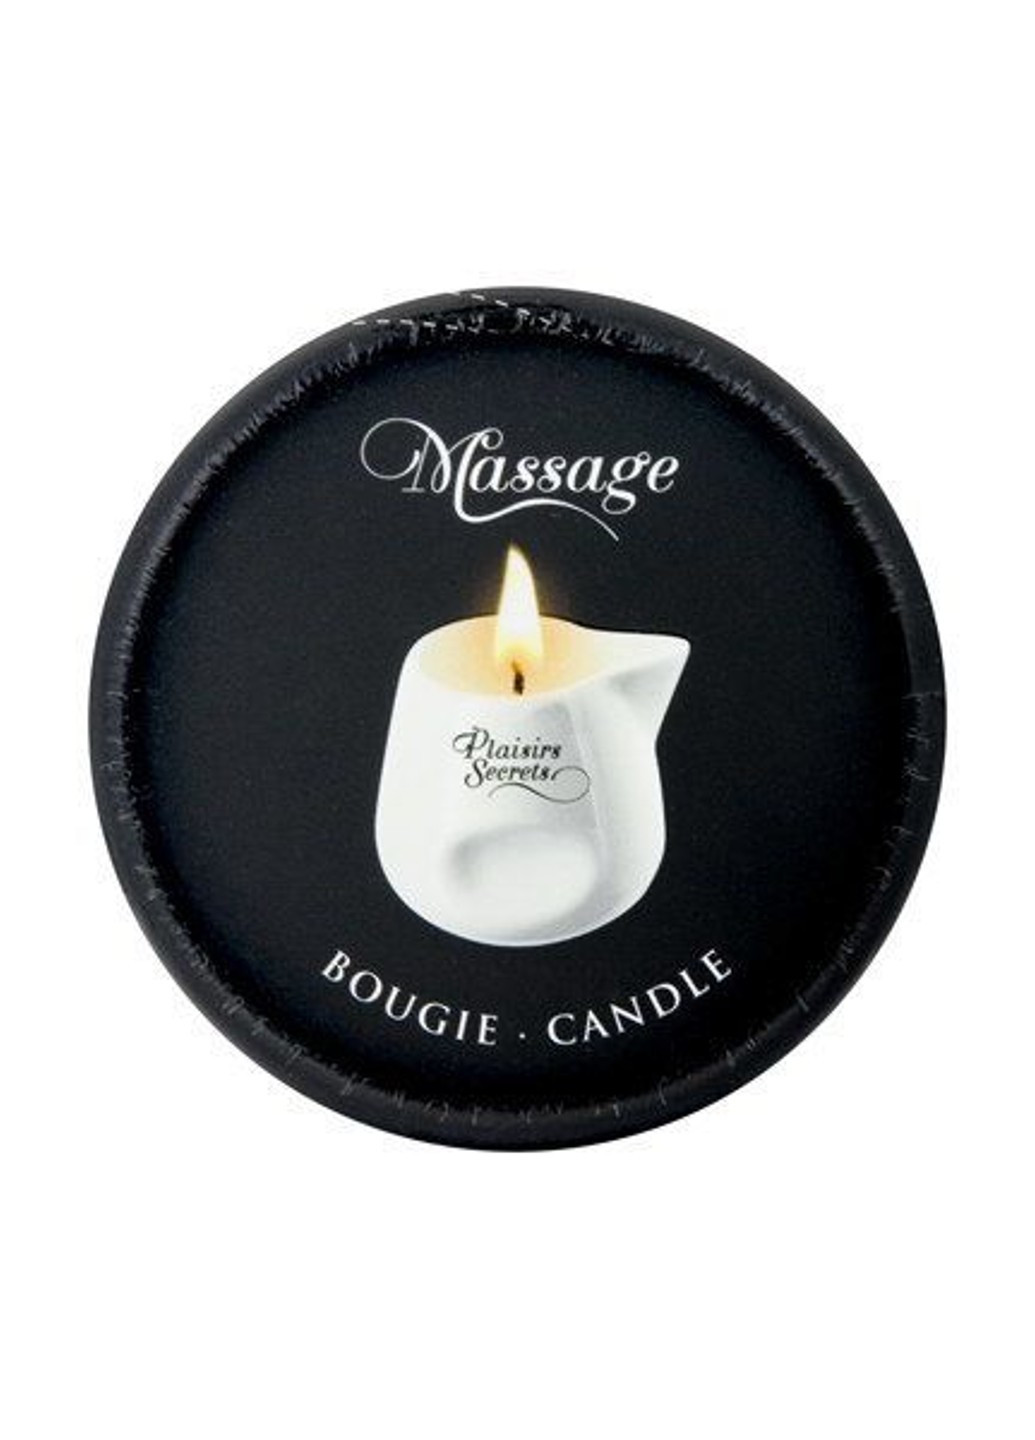 Массажная свеча Bubble Gum (80 мл) подарочная упаковка, керамический сосуд Plaisirs Secrets (255169416)